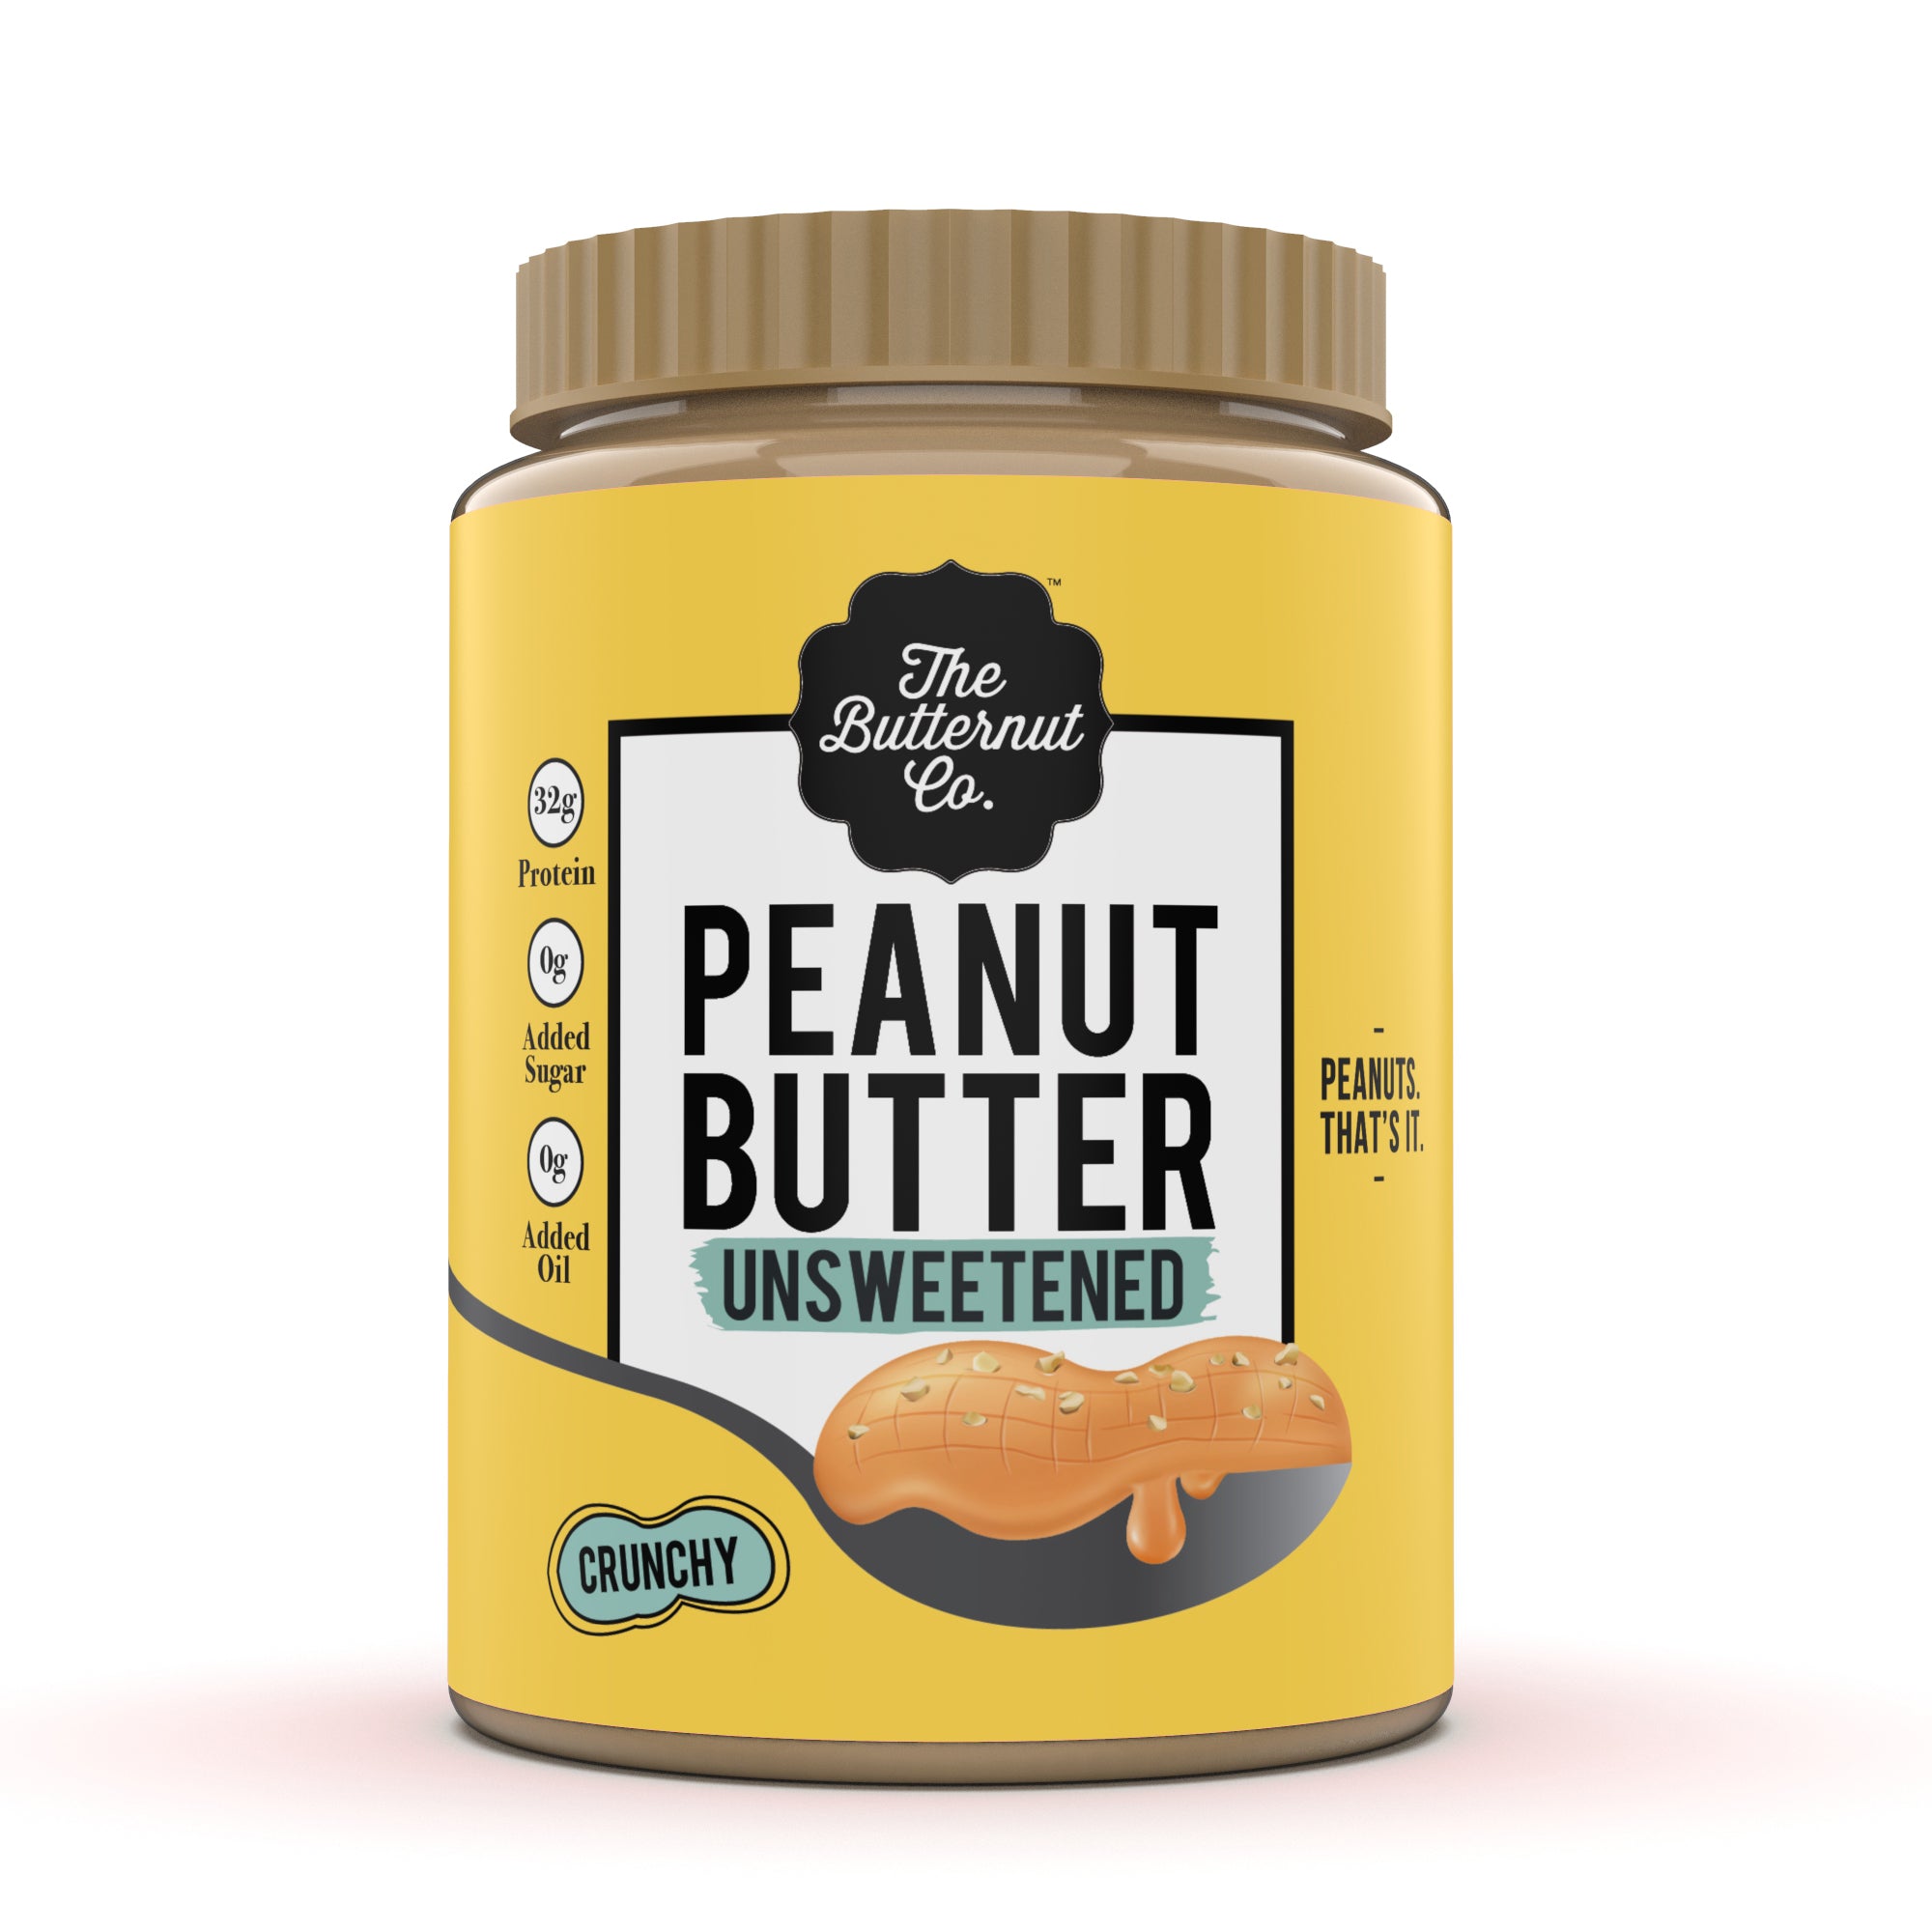 The Butternut Co. Unsweetened Peanut Butter